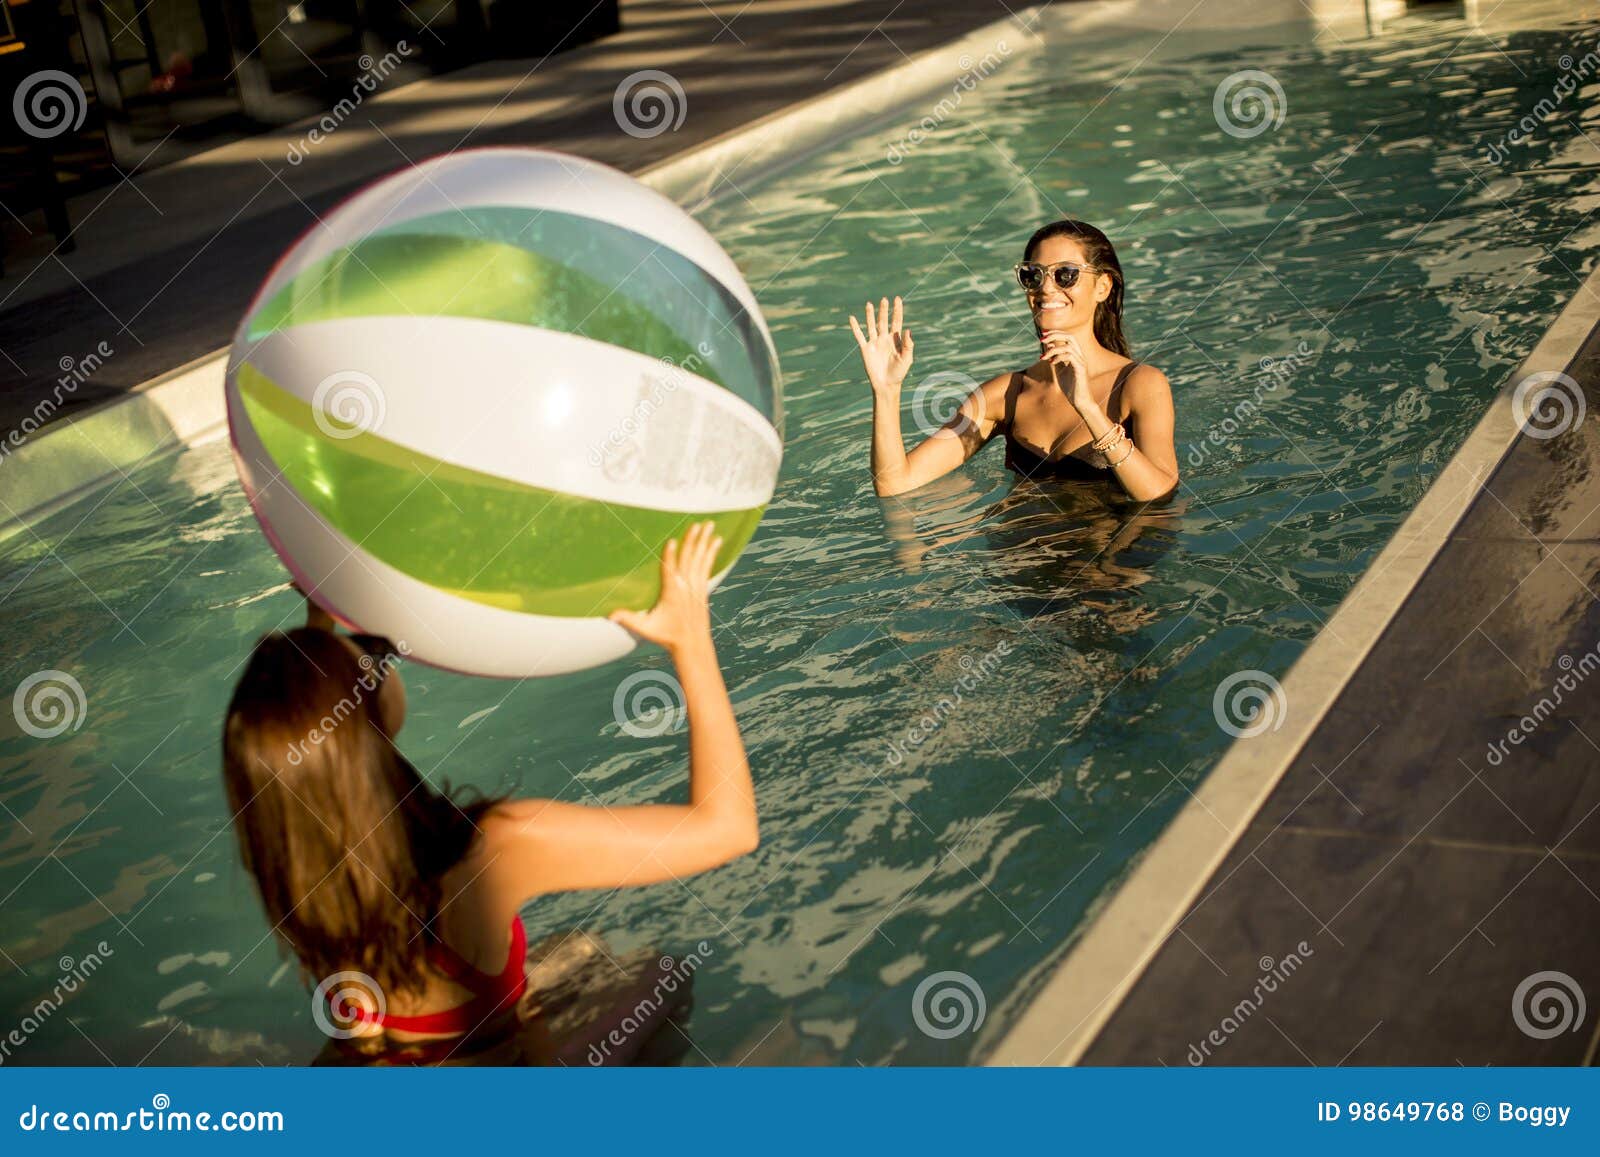 Игра с мячом в бассейне 9. Девушка в бассейне с мячом. Девочки в бассейне с мячом. Фотосессия в бассейне с шариками девушки. Мяч для бассейна.